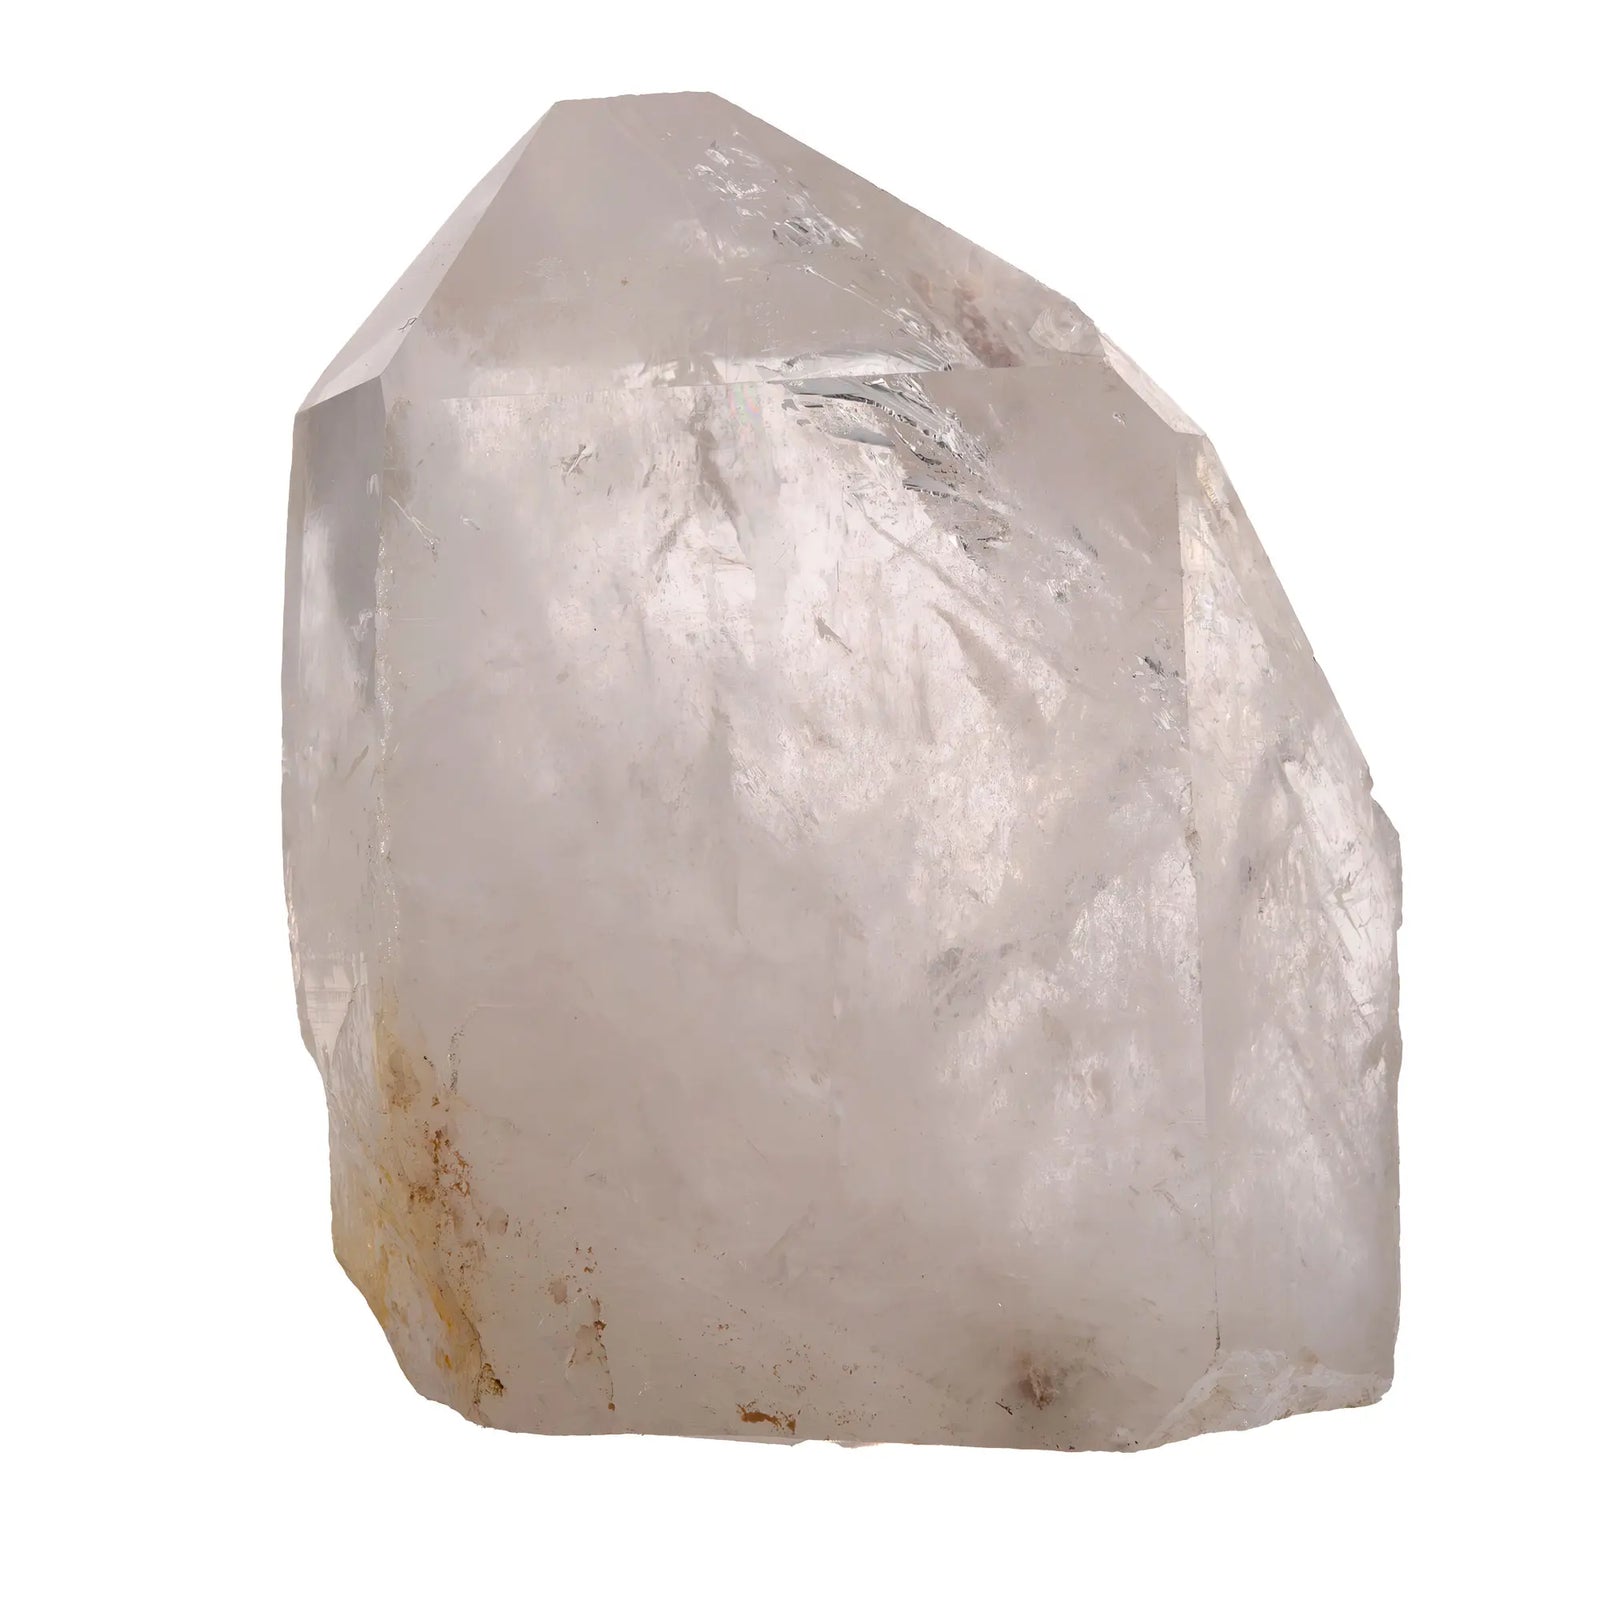 Cristal de roche - cristal brut  - CRISTAL SOURCES